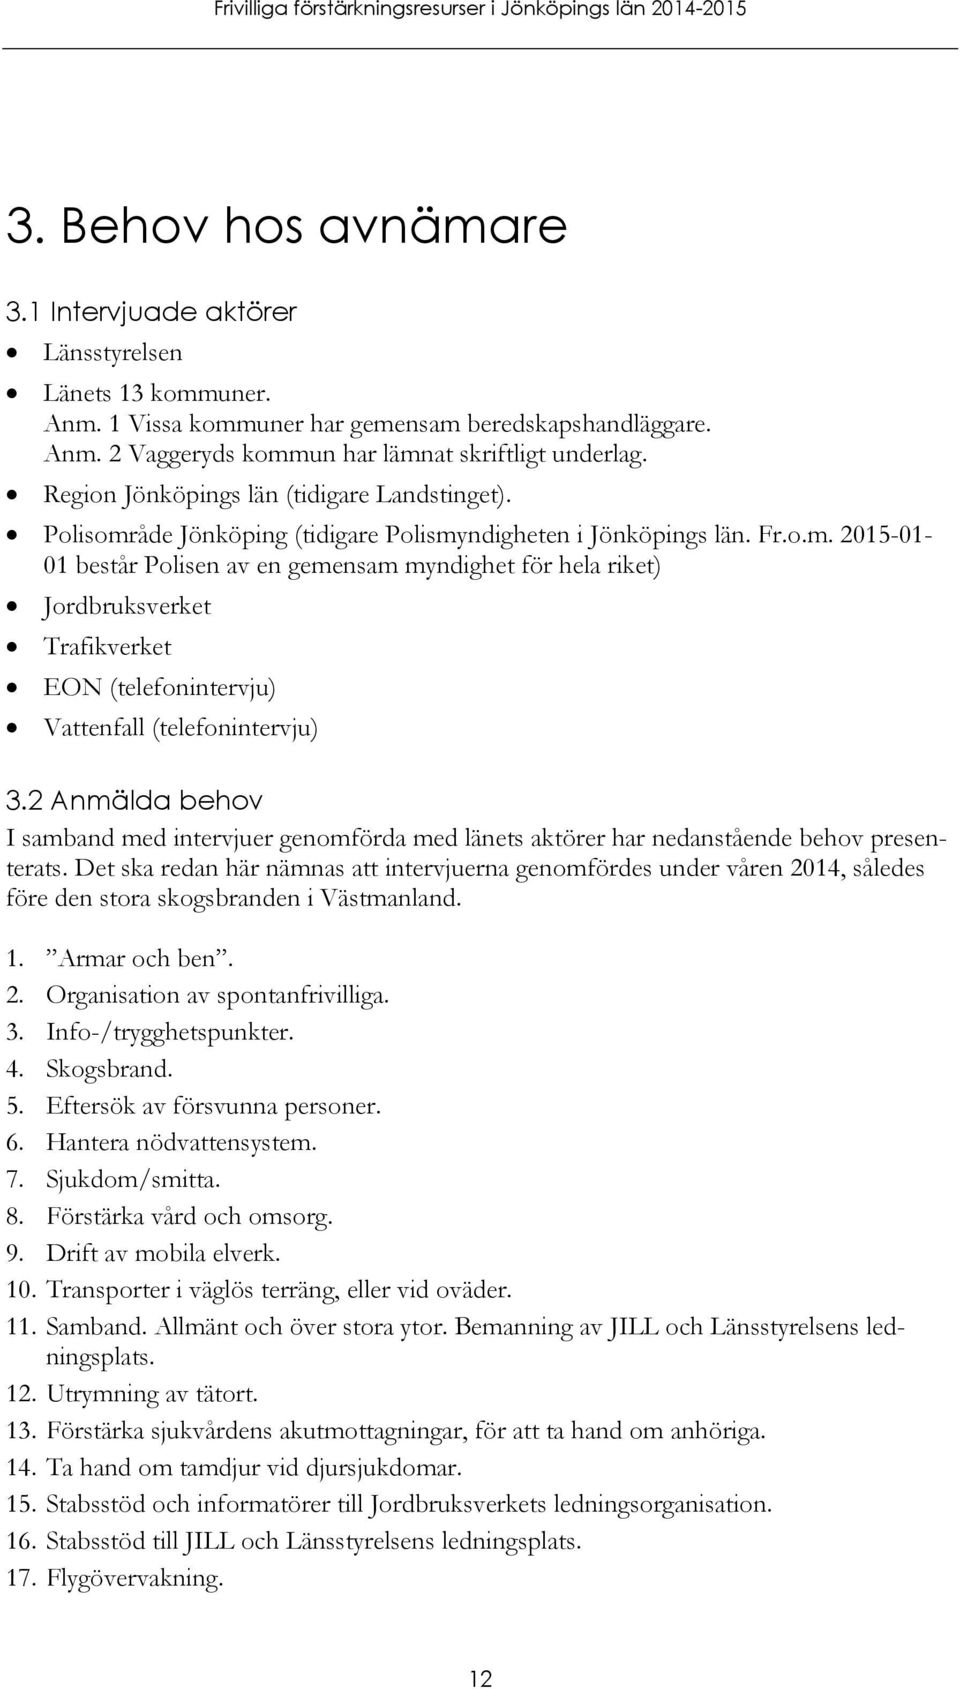 åde Jönköping (tidigare Polismyndigheten i Jönköpings län. Fr.o.m. 2015-01- 01 består Polisen av en gemensam myndighet för hela riket) Jordbruksverket Trafikverket EON (telefonintervju) Vattenfall (telefonintervju) 3.